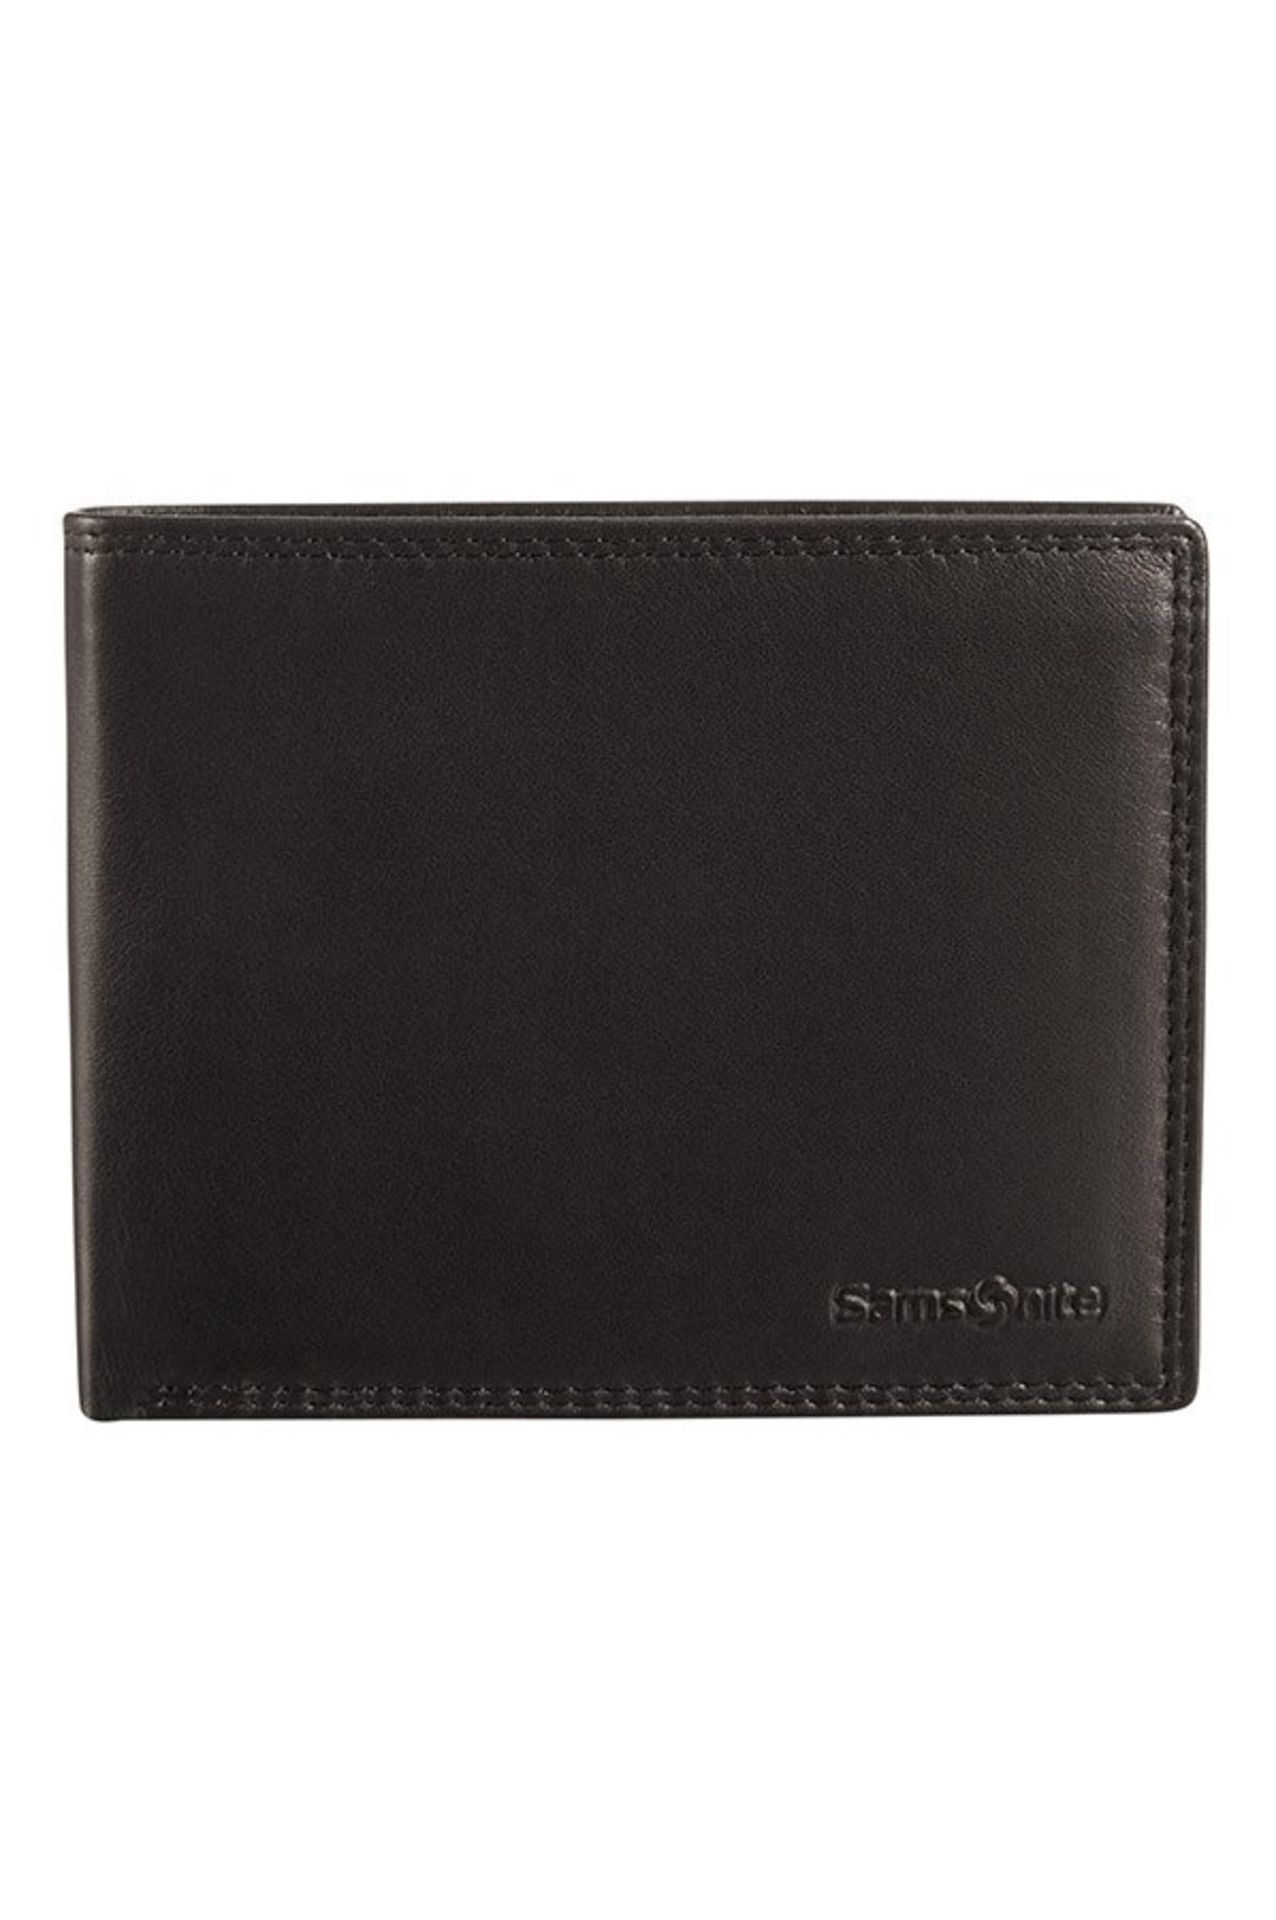 + VAT Brand New Samsonite Gents Black Leather Wallet - 3 Credit Card Slots - Zip Pocket Section - 2 - Image 2 of 2